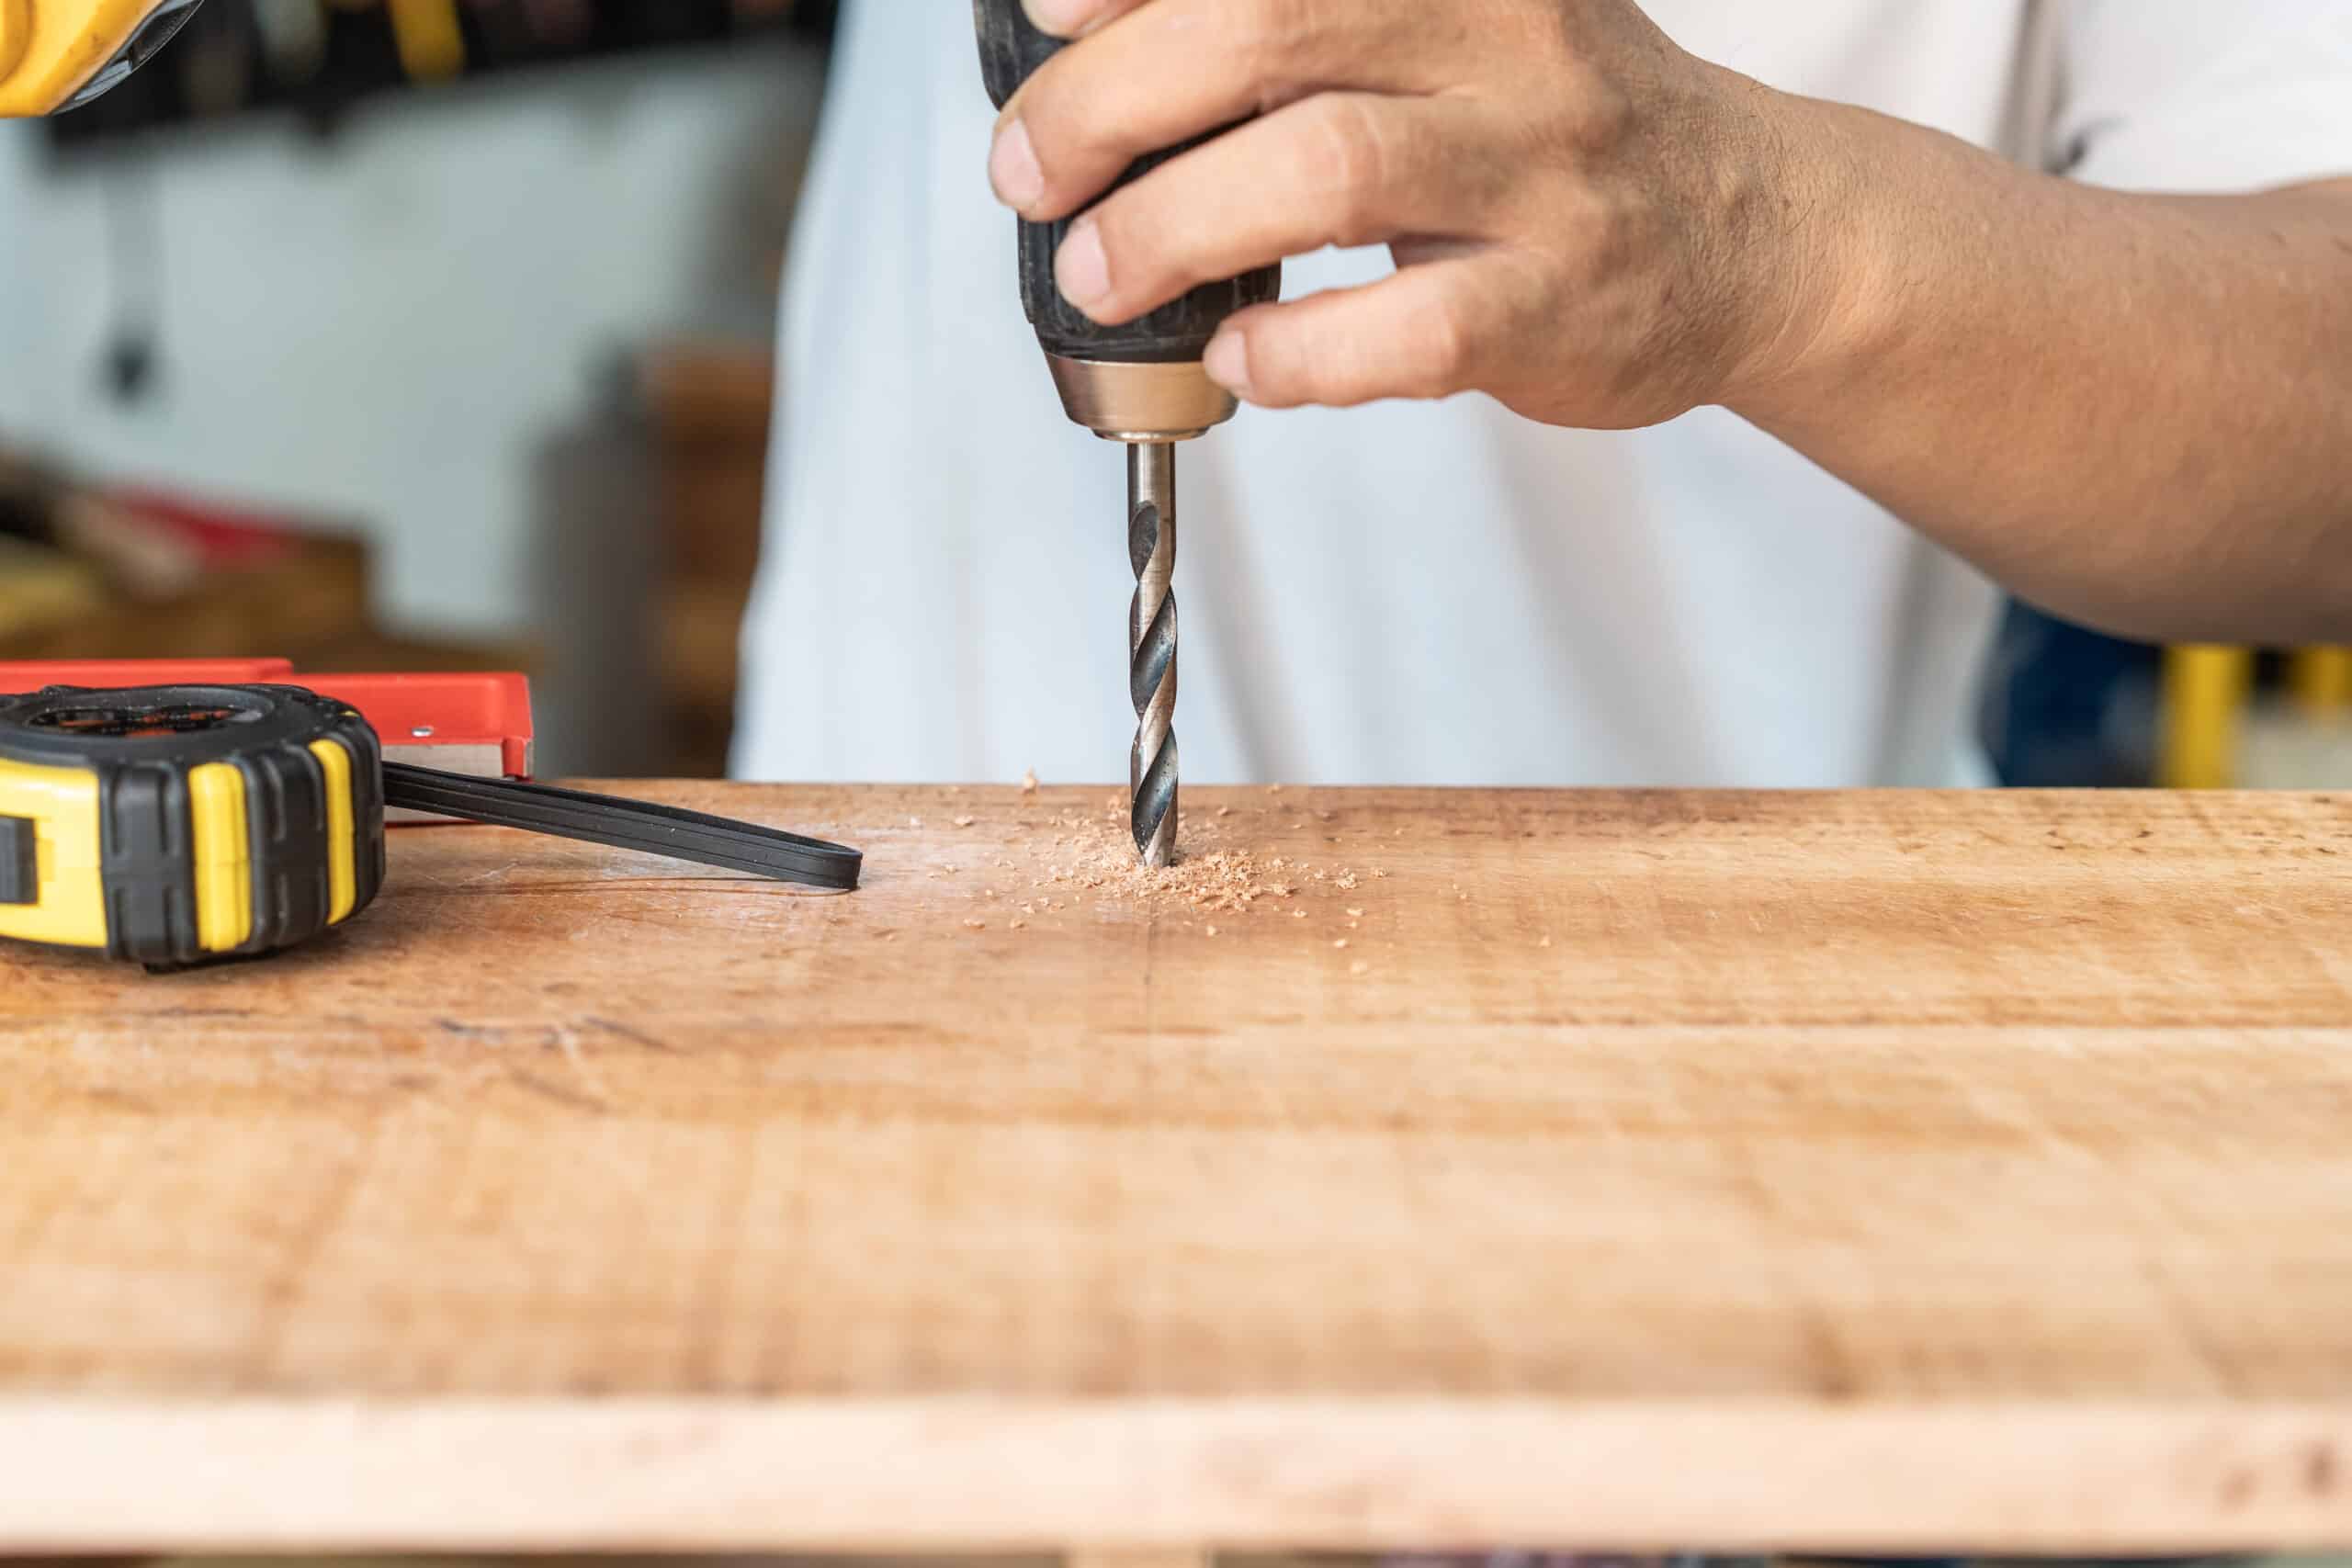 theprecisiontools.com : Can I drill a screw straight into wood?